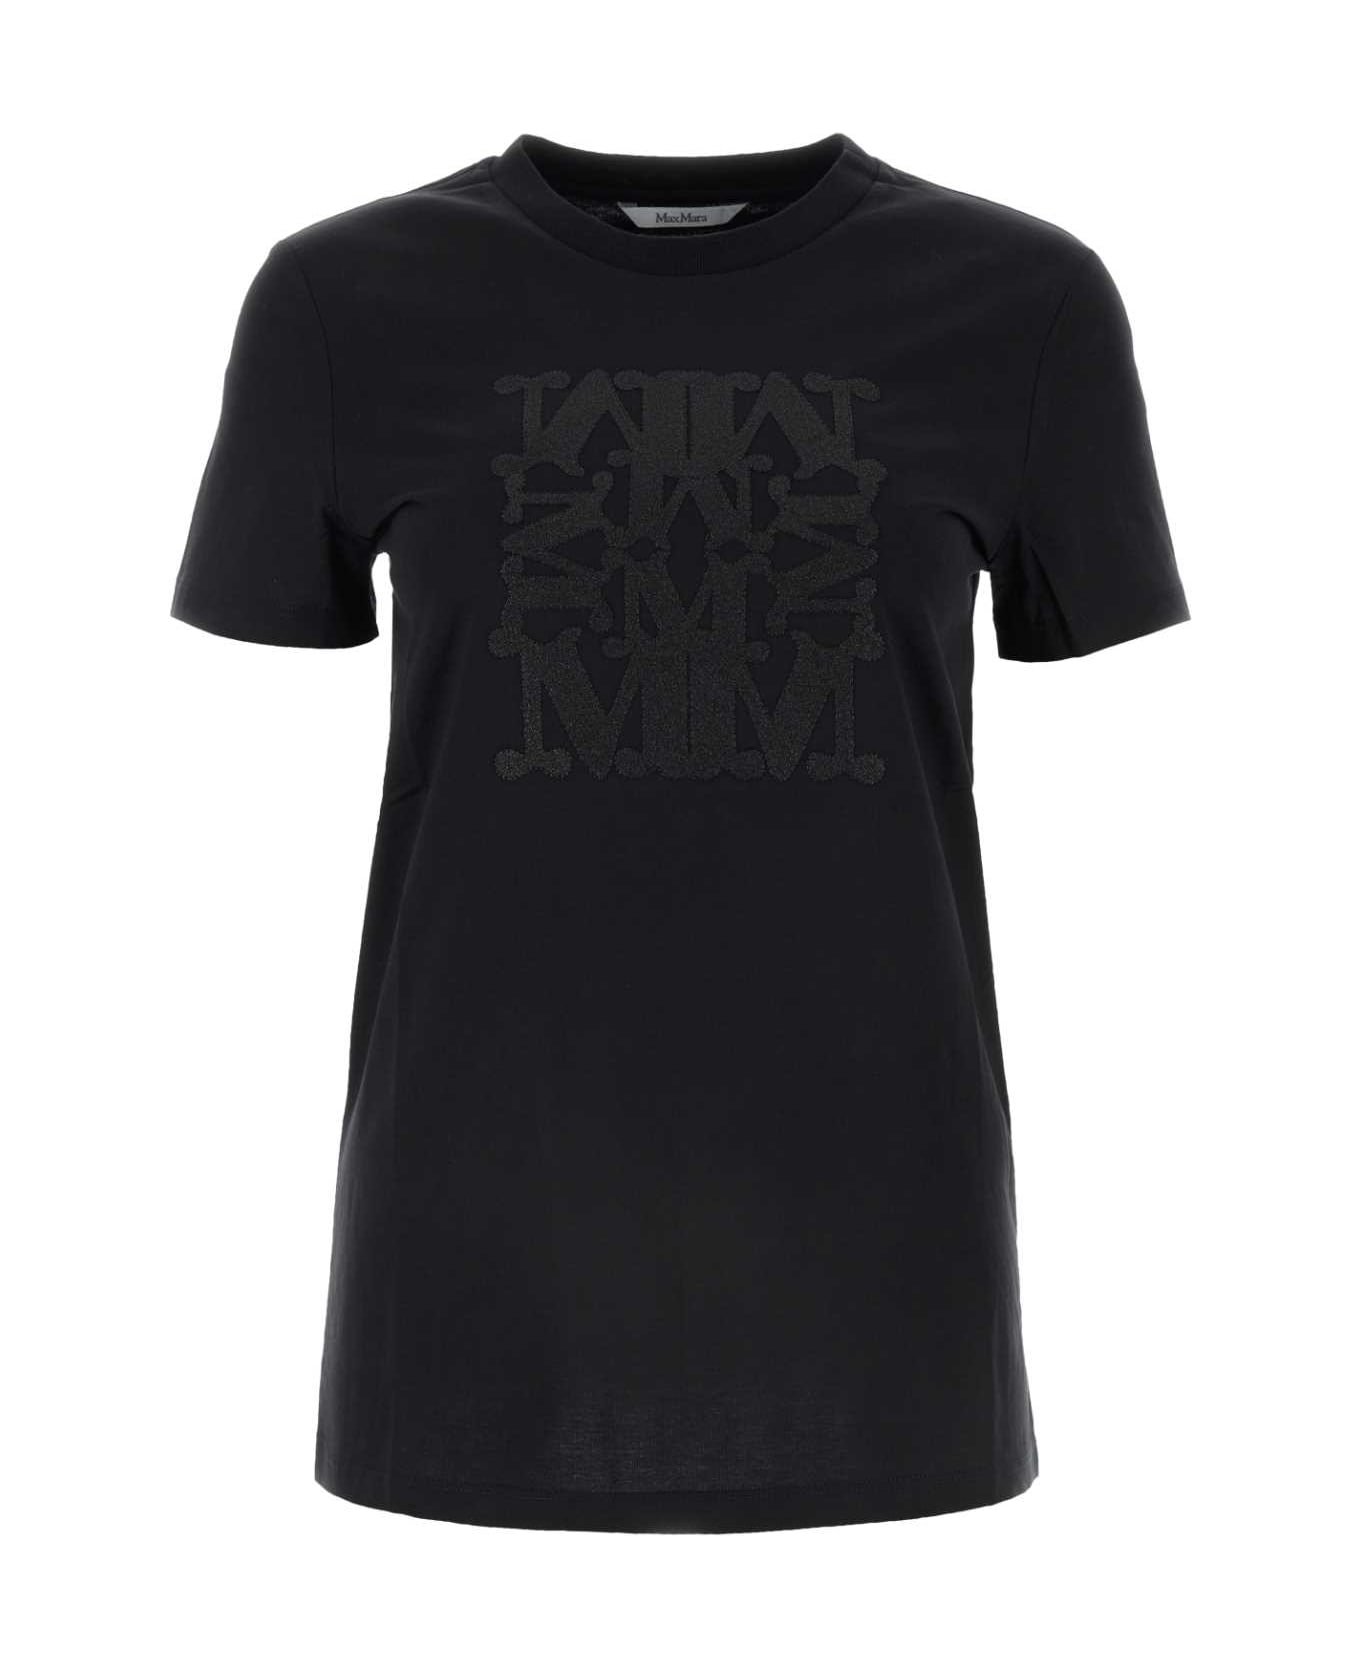 Max Mara Black Cotton Taverna T-shirt - NERO